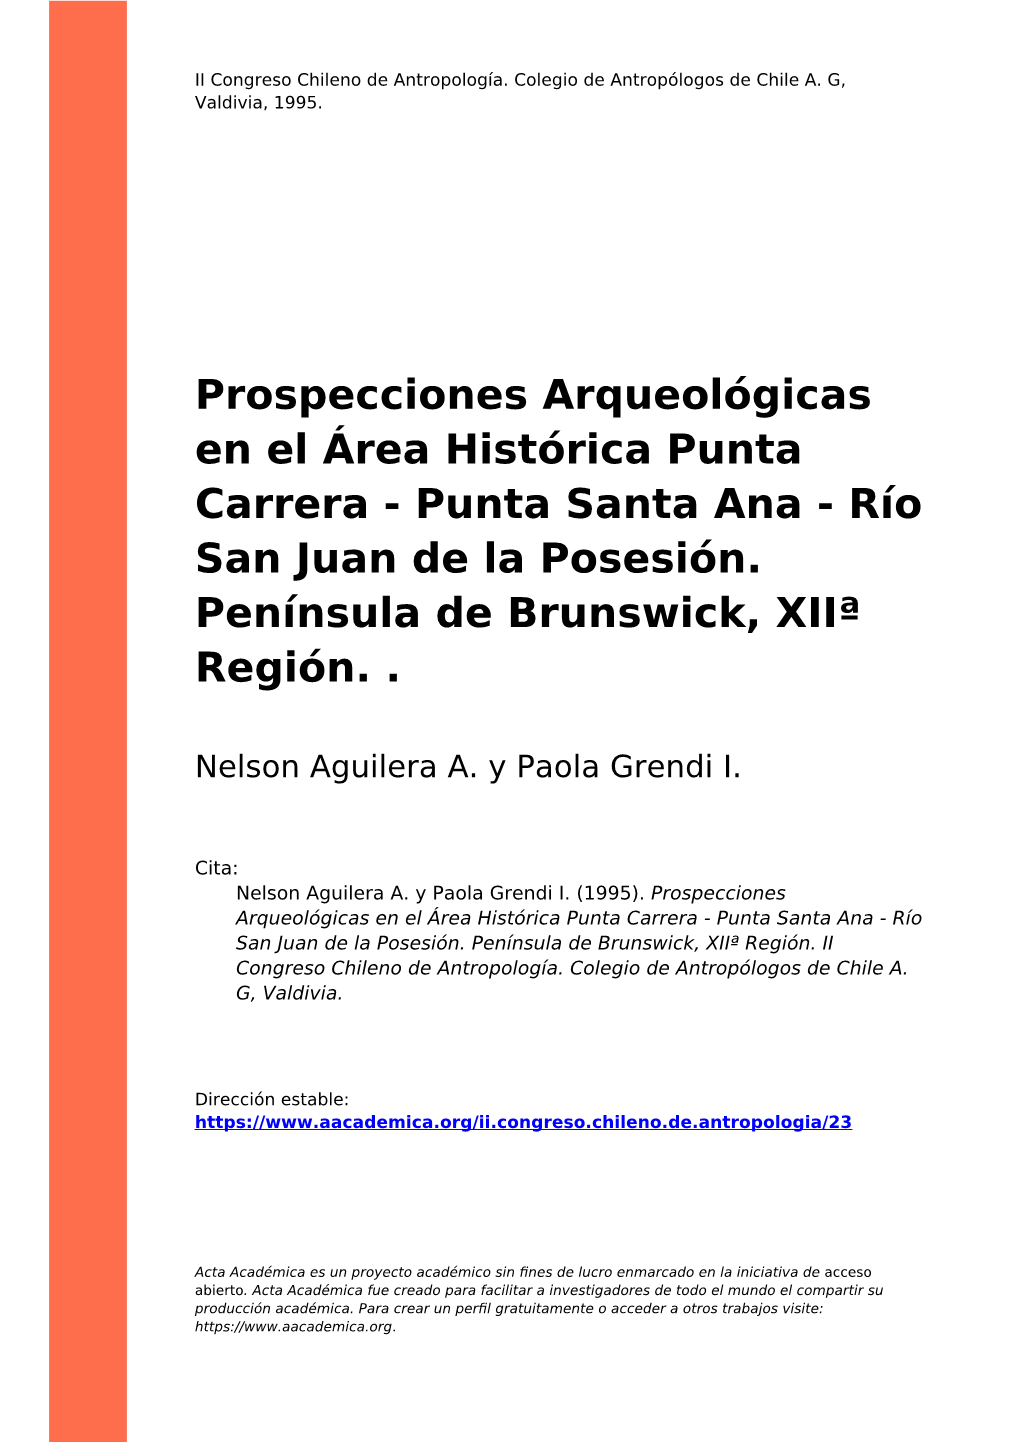 Prospecciones Arqueológicas En El Área Histórica Punta Carrera - Punta Santa Ana - Río San Juan De La Posesión